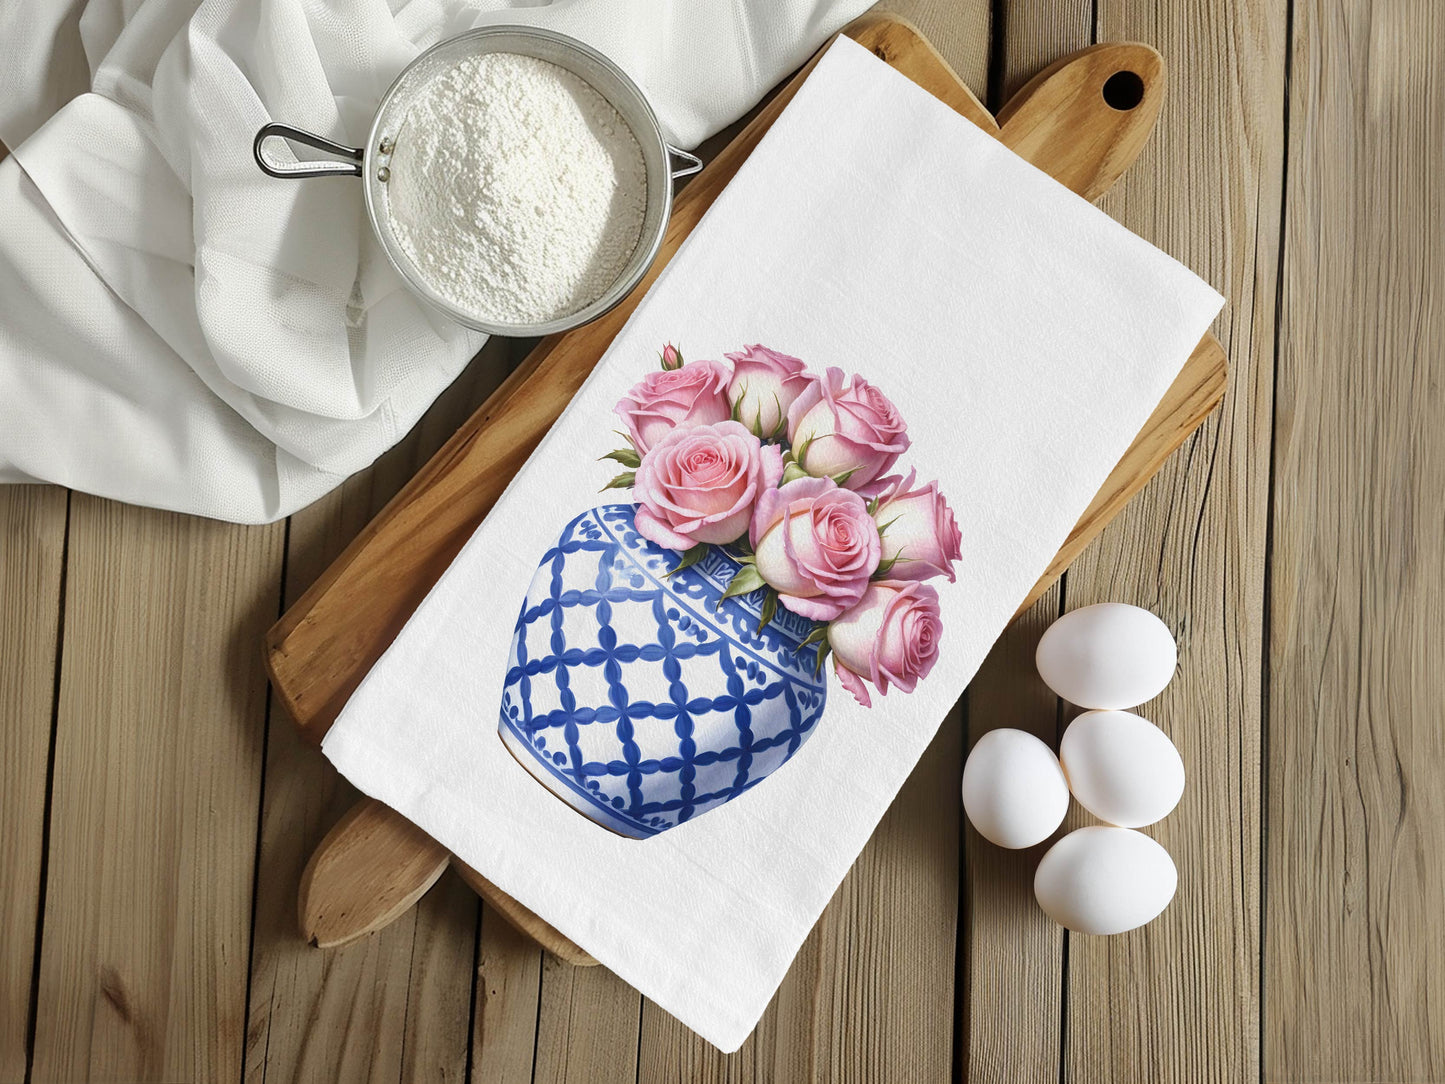 Blue Ginger Jar & Roses Kitchen Towel - Flour Sack Cotton Hand Towel